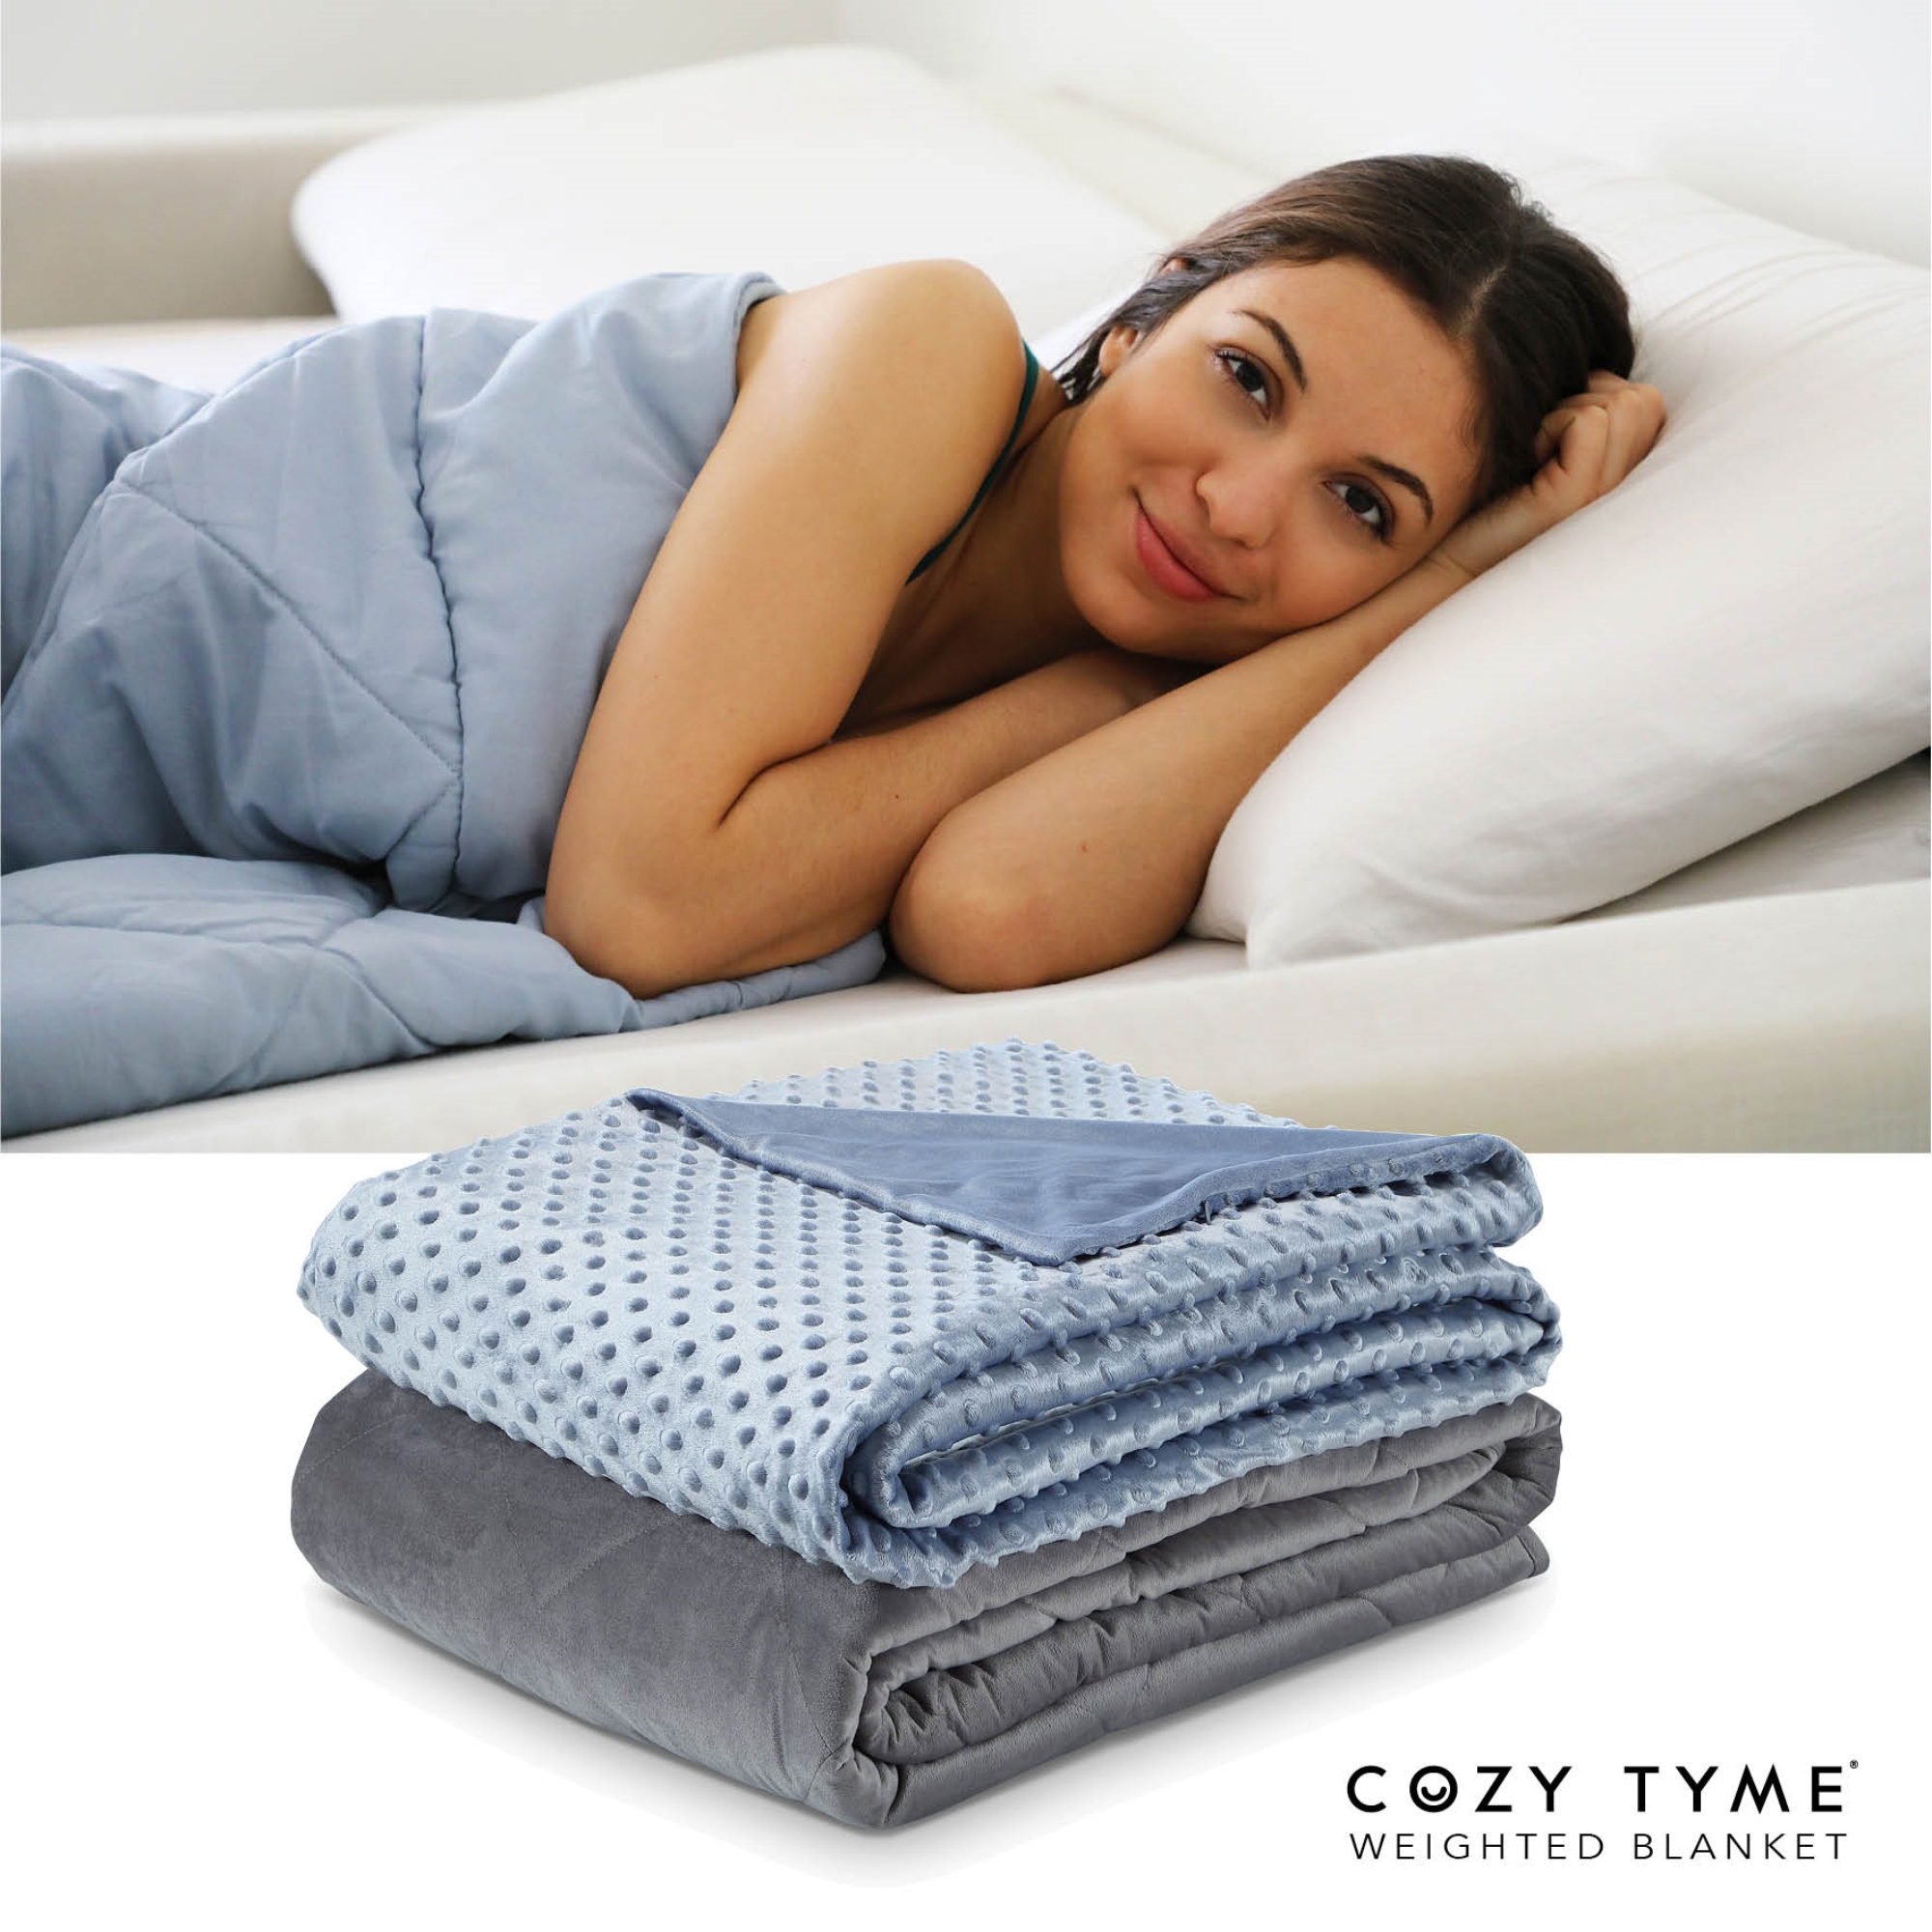 Cozy Tyme Light Blue Duvet: 100% Polyester, Blanket: 100% Cotton Throws 6 Pound Calm Sleeping